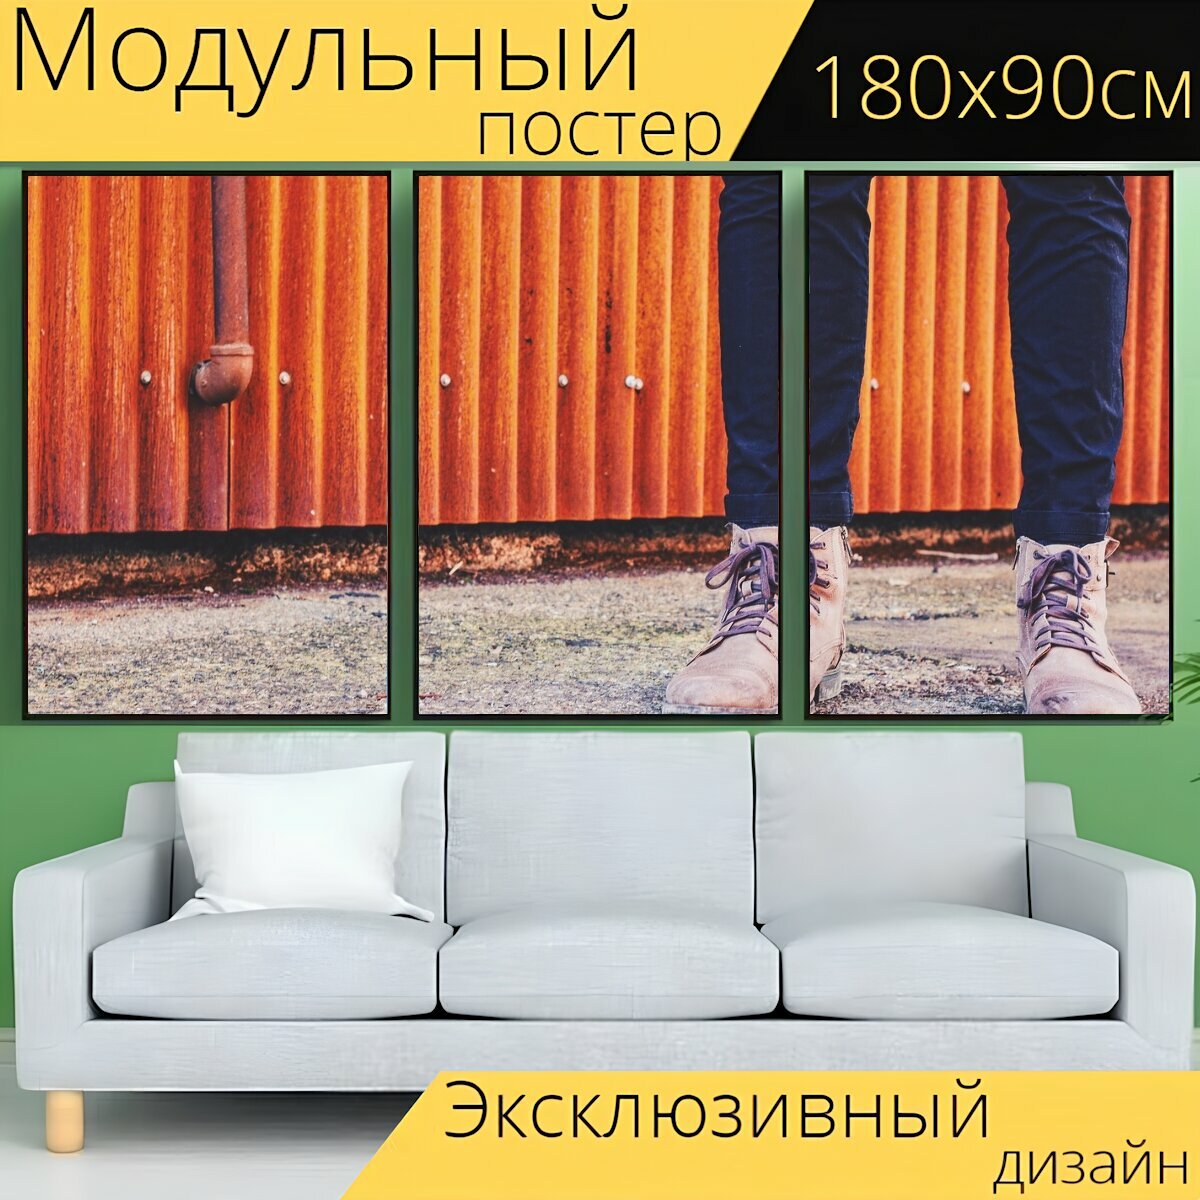 Модульный постер "Сапоги, джинсы, джинсовая ткань" 180 x 90 см. для интерьера